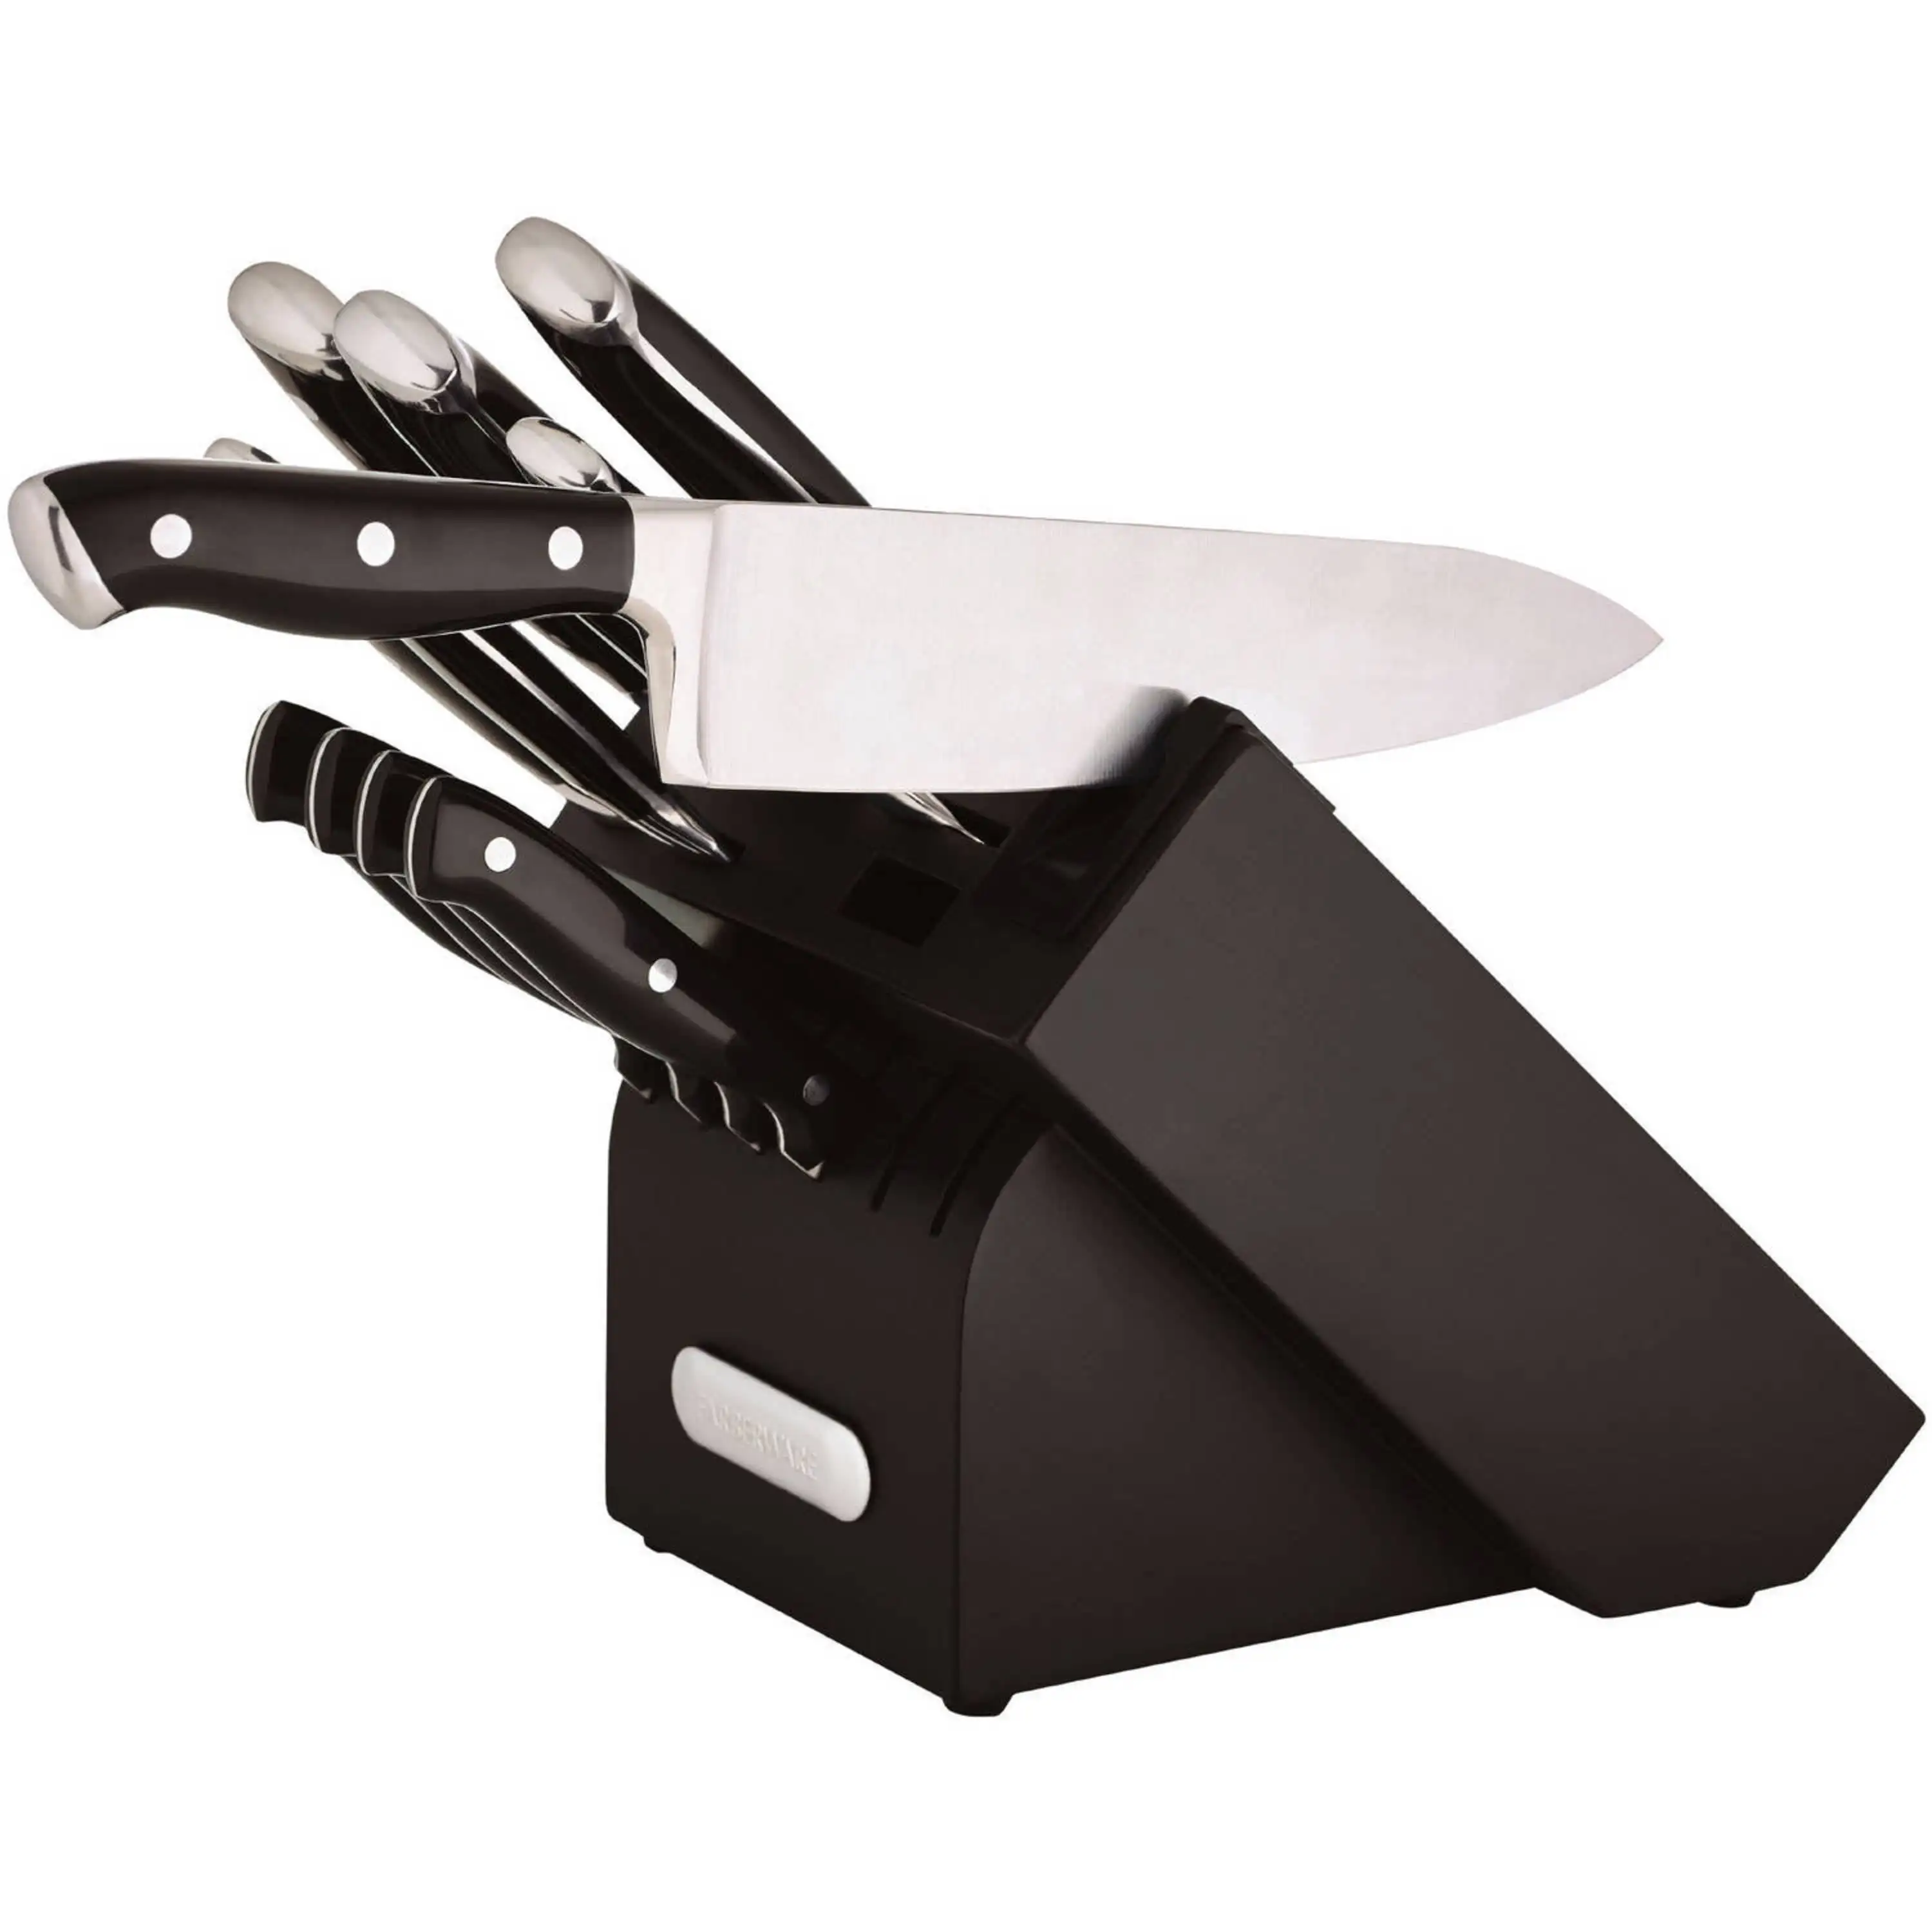 Farberware 6 In. Black Chef Knife with Edgekeeper Sheath - Sun